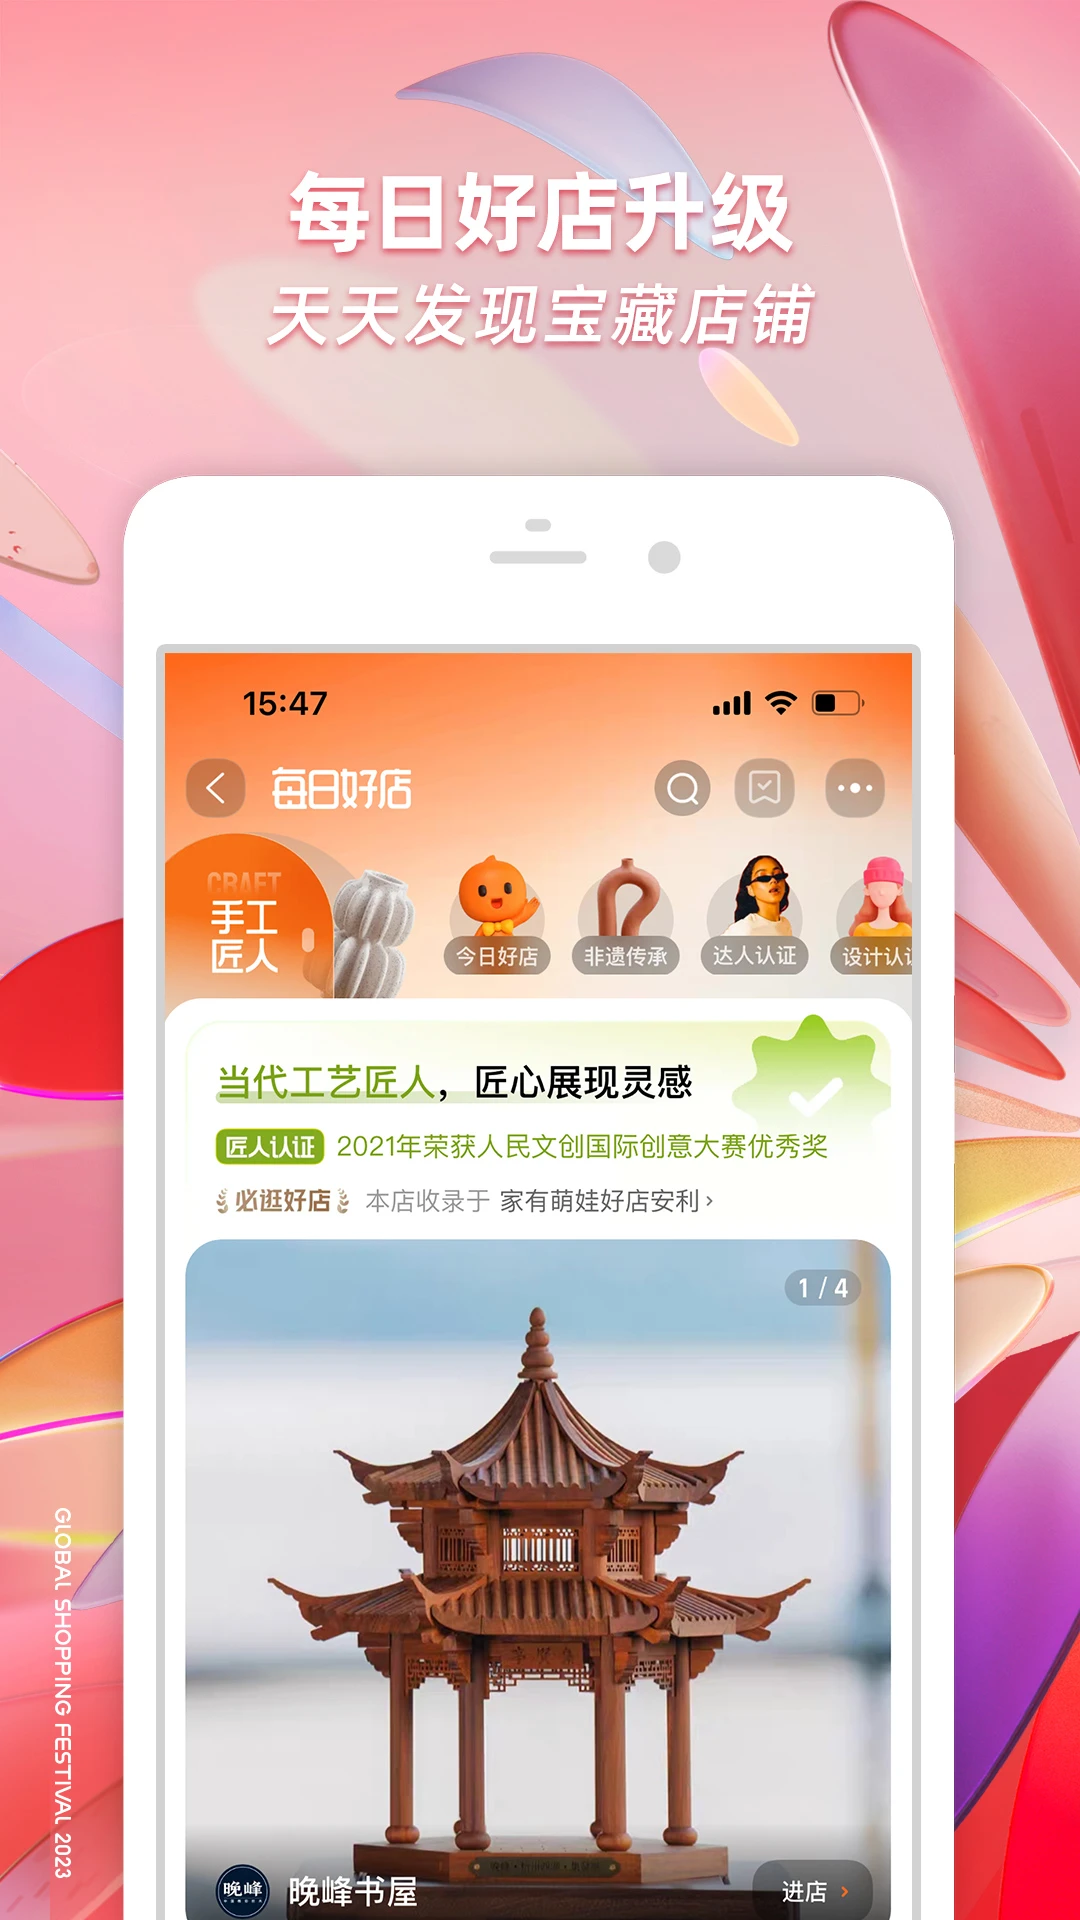 返利购物淘联盟下载安卓最新版_手机app官方版免费安装下载_豌豆荚